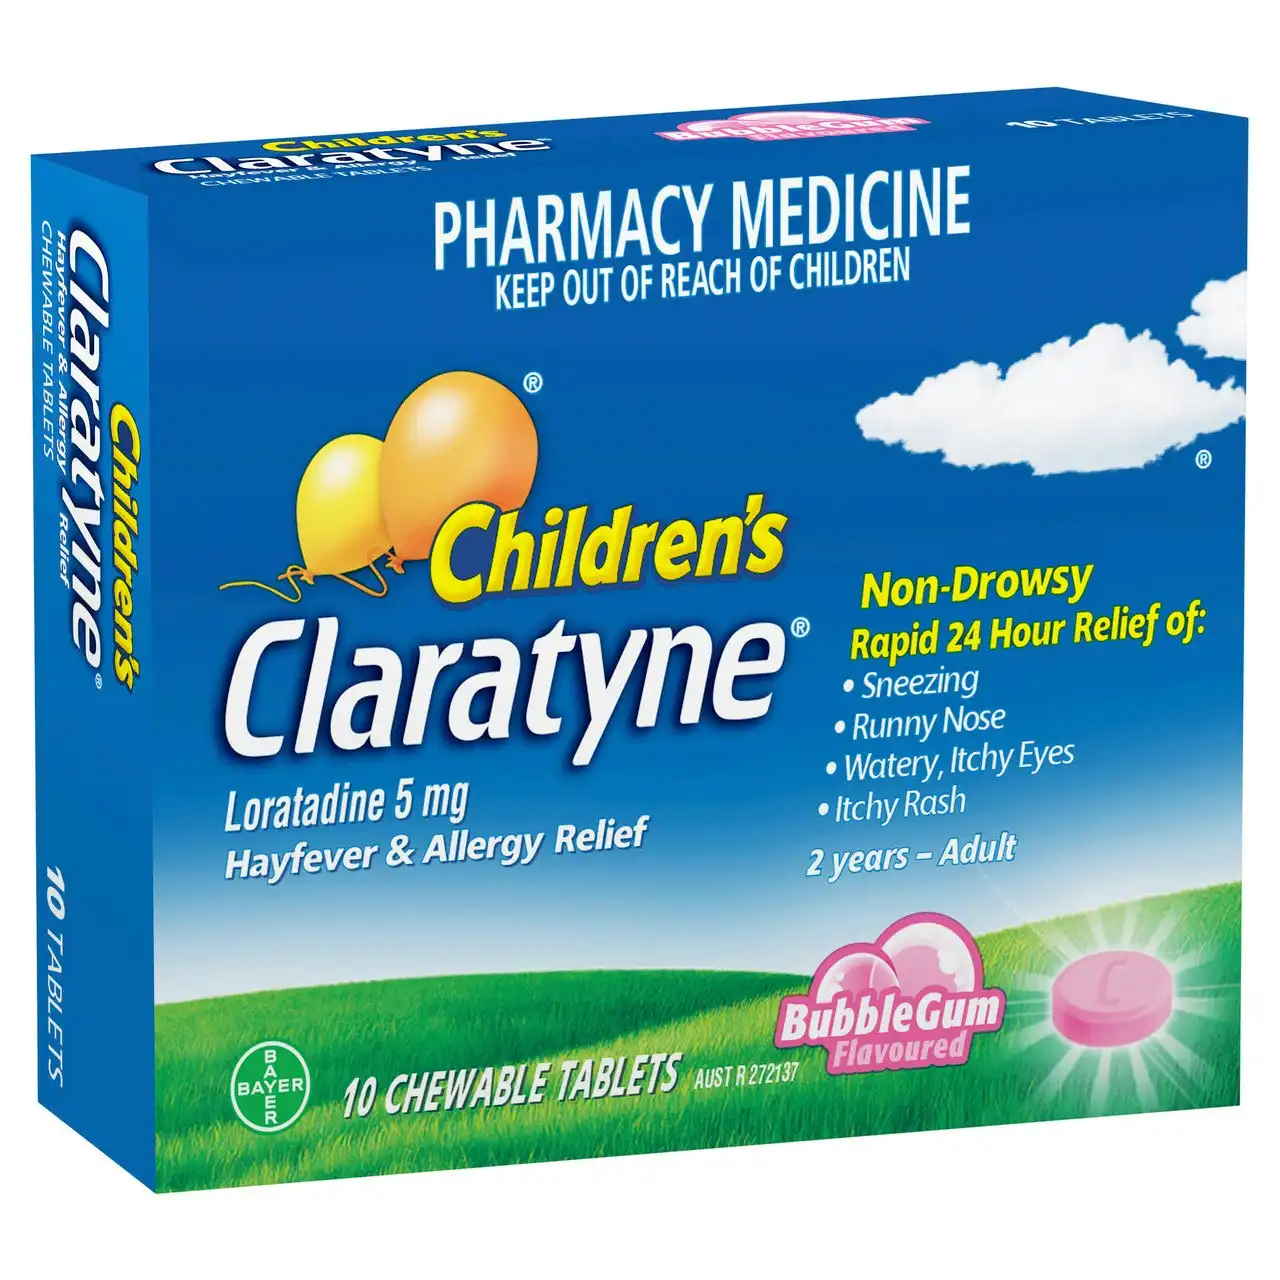 Children's CLARATYNE Allergy & Hayfever Relief Antihistamine Bubblegum Flavoured Chewable Tablets 10 pack